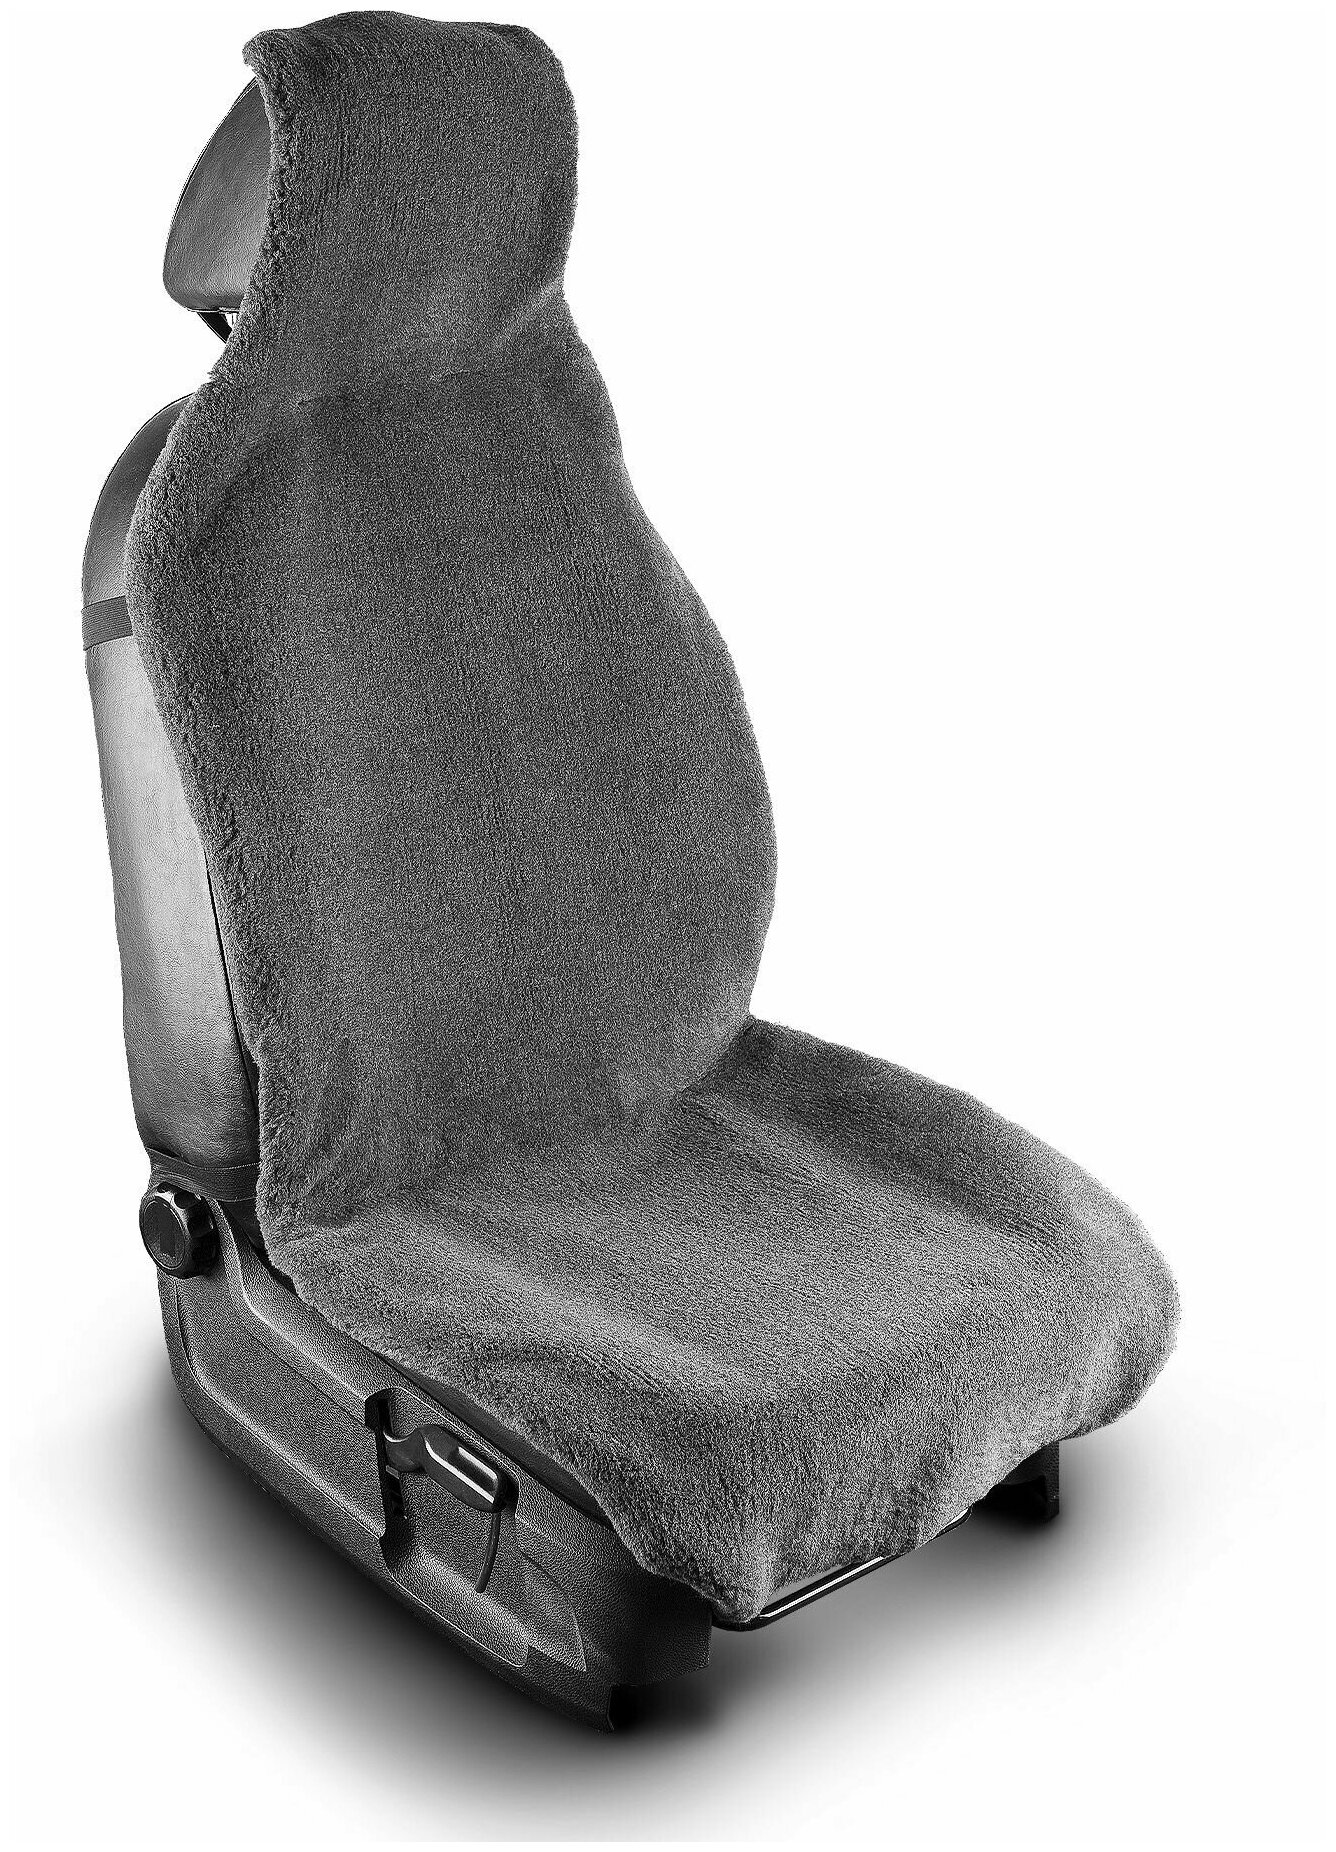 Меховая накидка на водительское автокресло или сиденье переднего ряда со слитным подголовником из серой шерсти универсальные с нескользящим подкладом